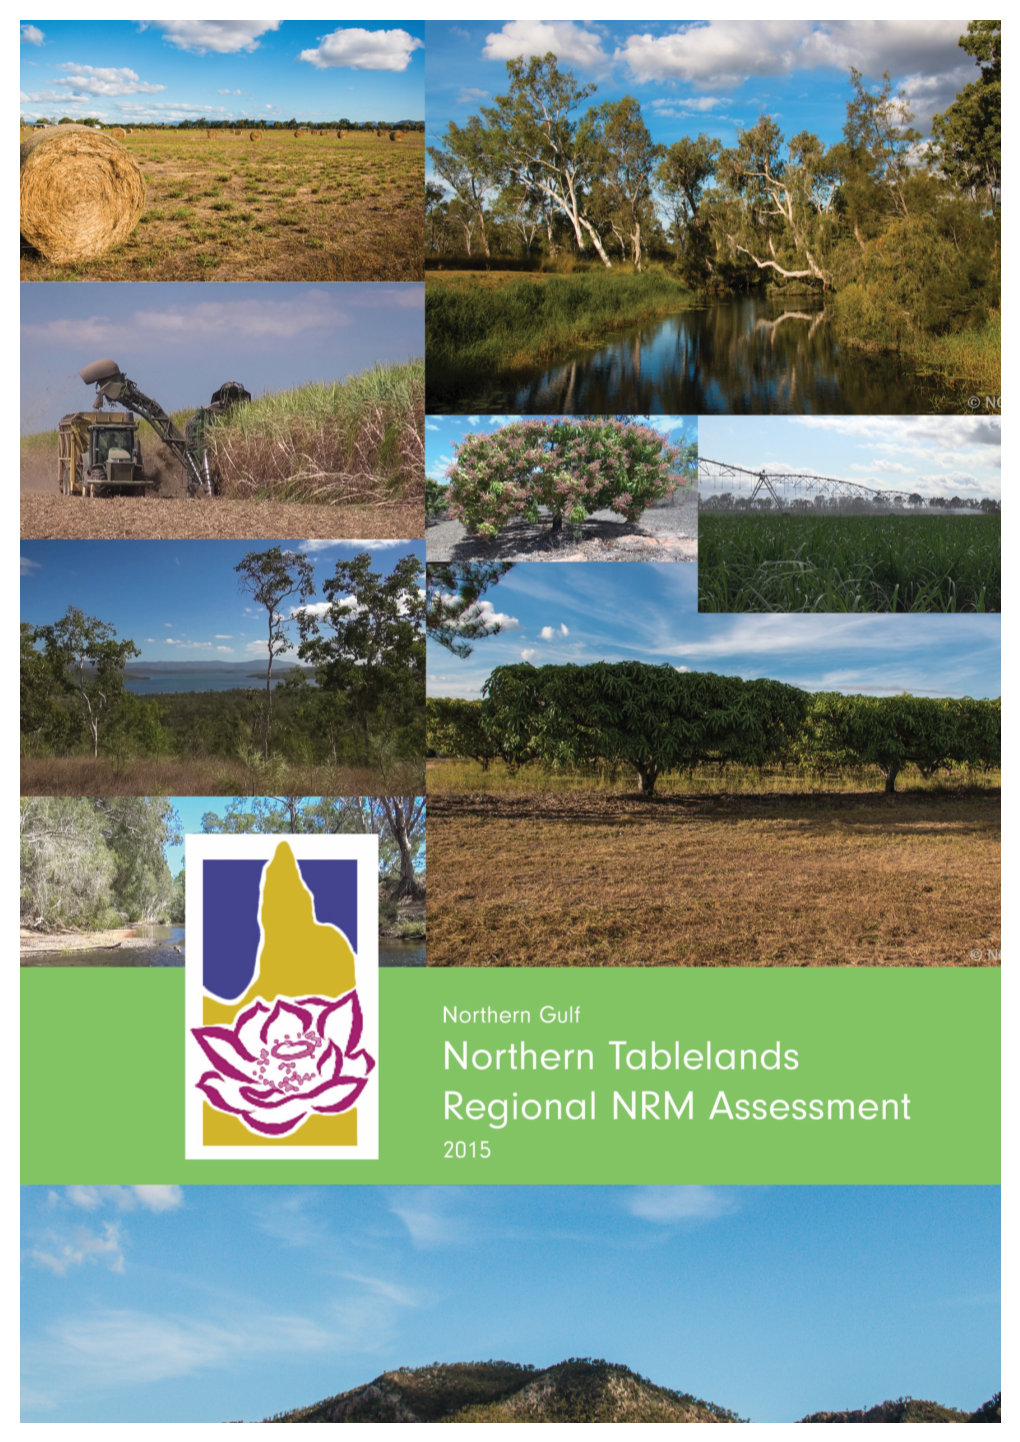 Northern Tablelands NRM Assessment